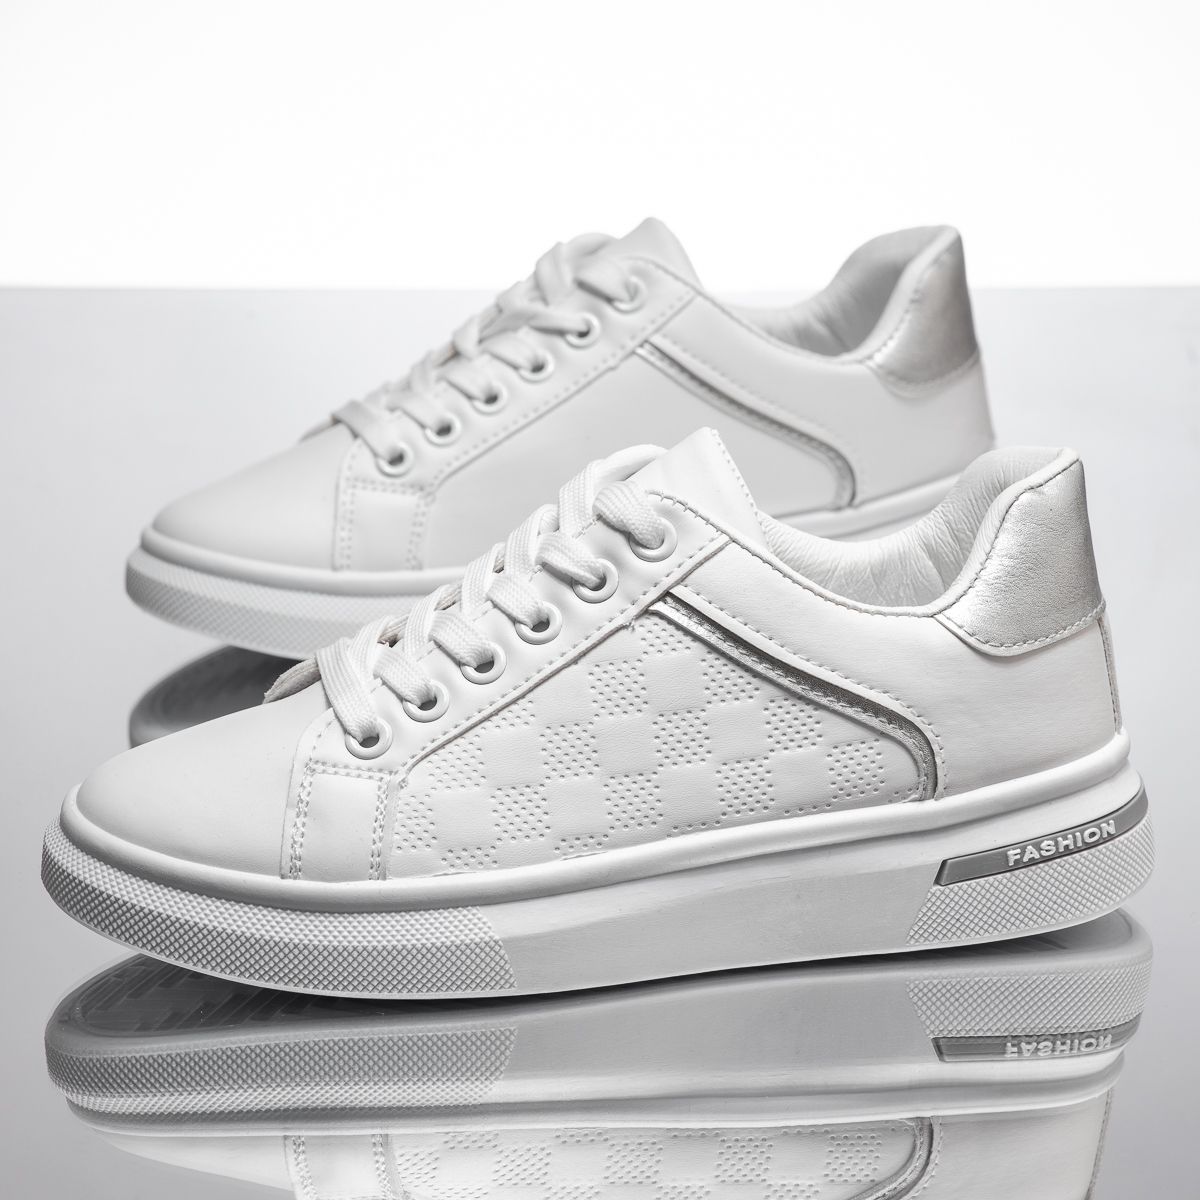 Дамски спортни обувки Libra Бяло/сребро #14158